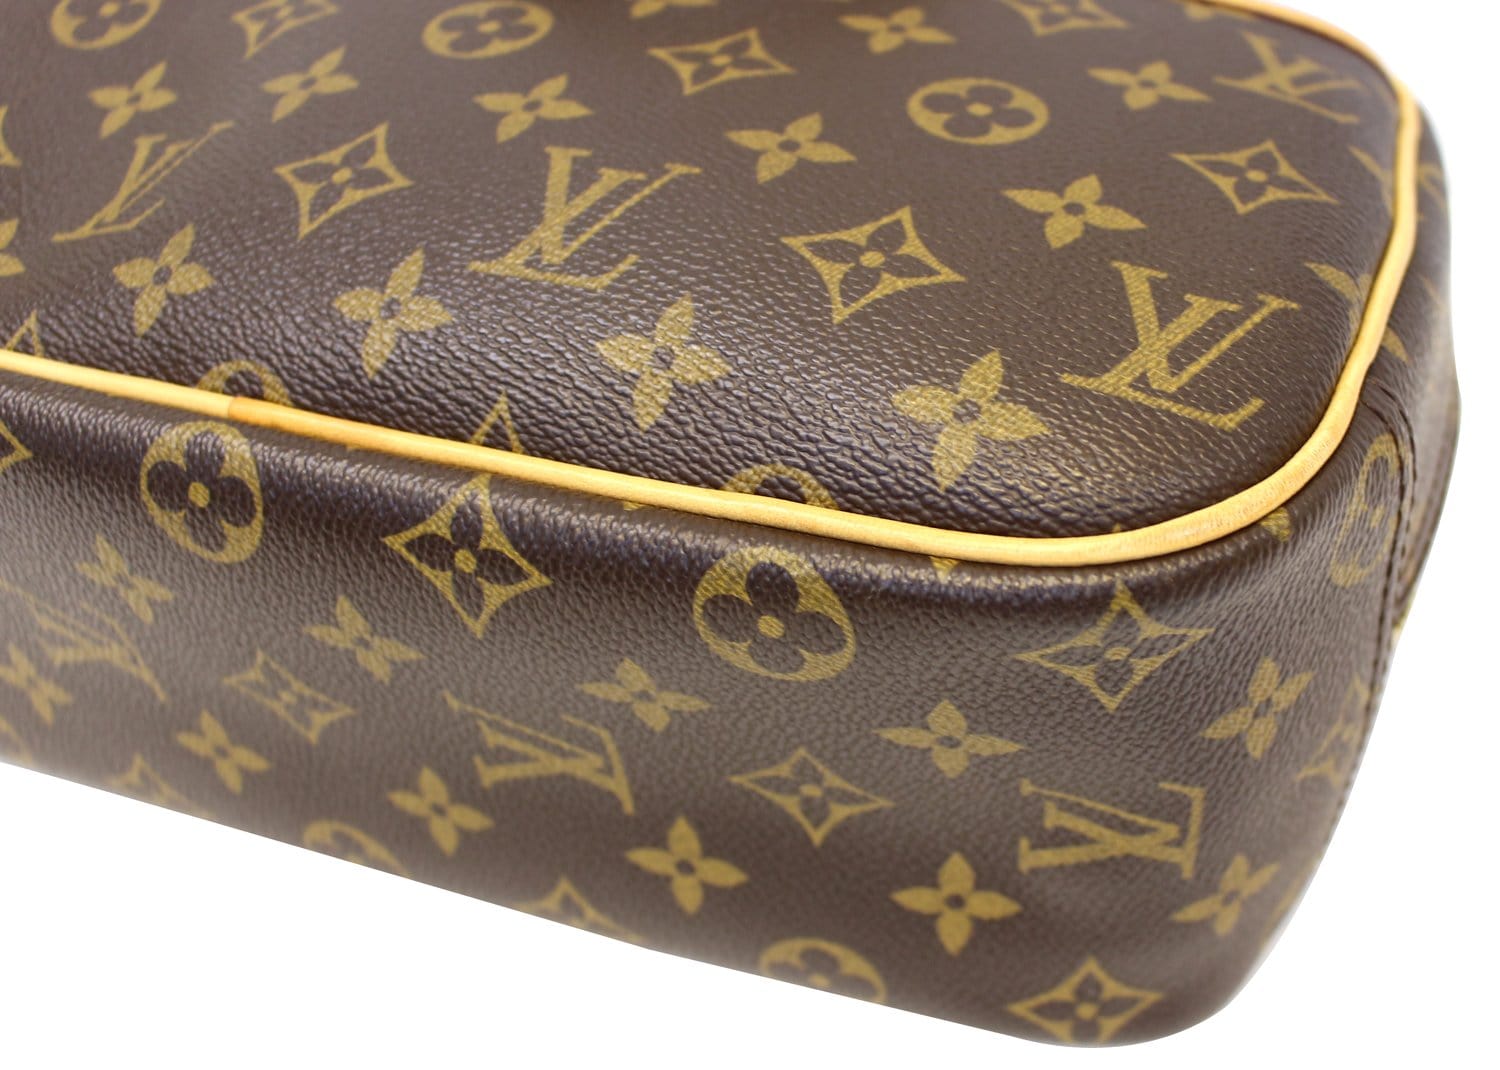 LOUIS VUITTON Trouville Handbag Boston Bag (M42228), France